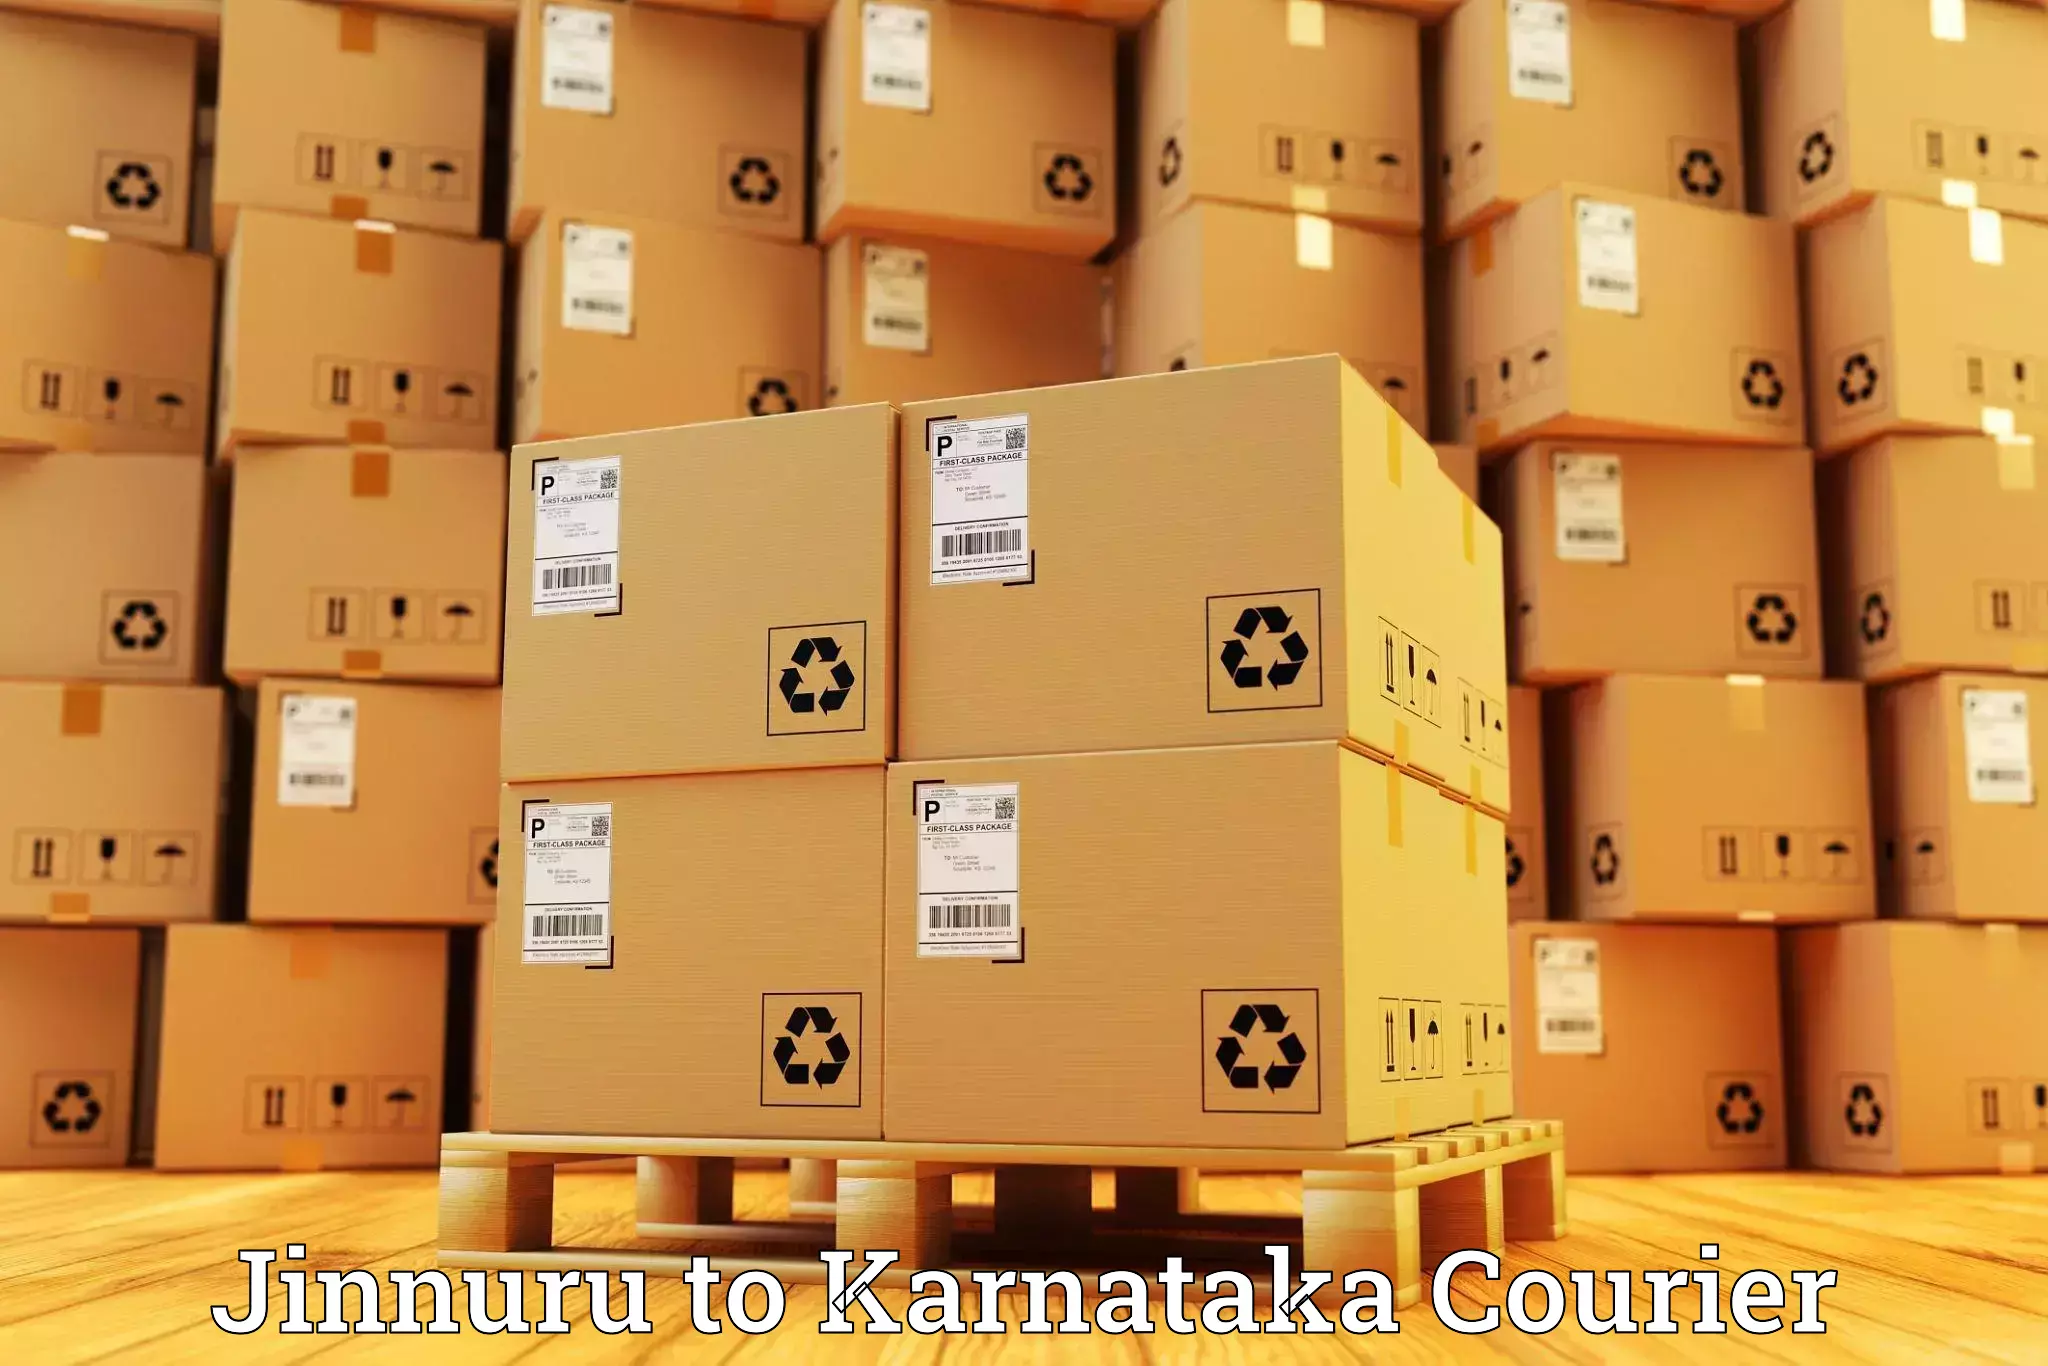 Cargo courier service Jinnuru to Bhalki